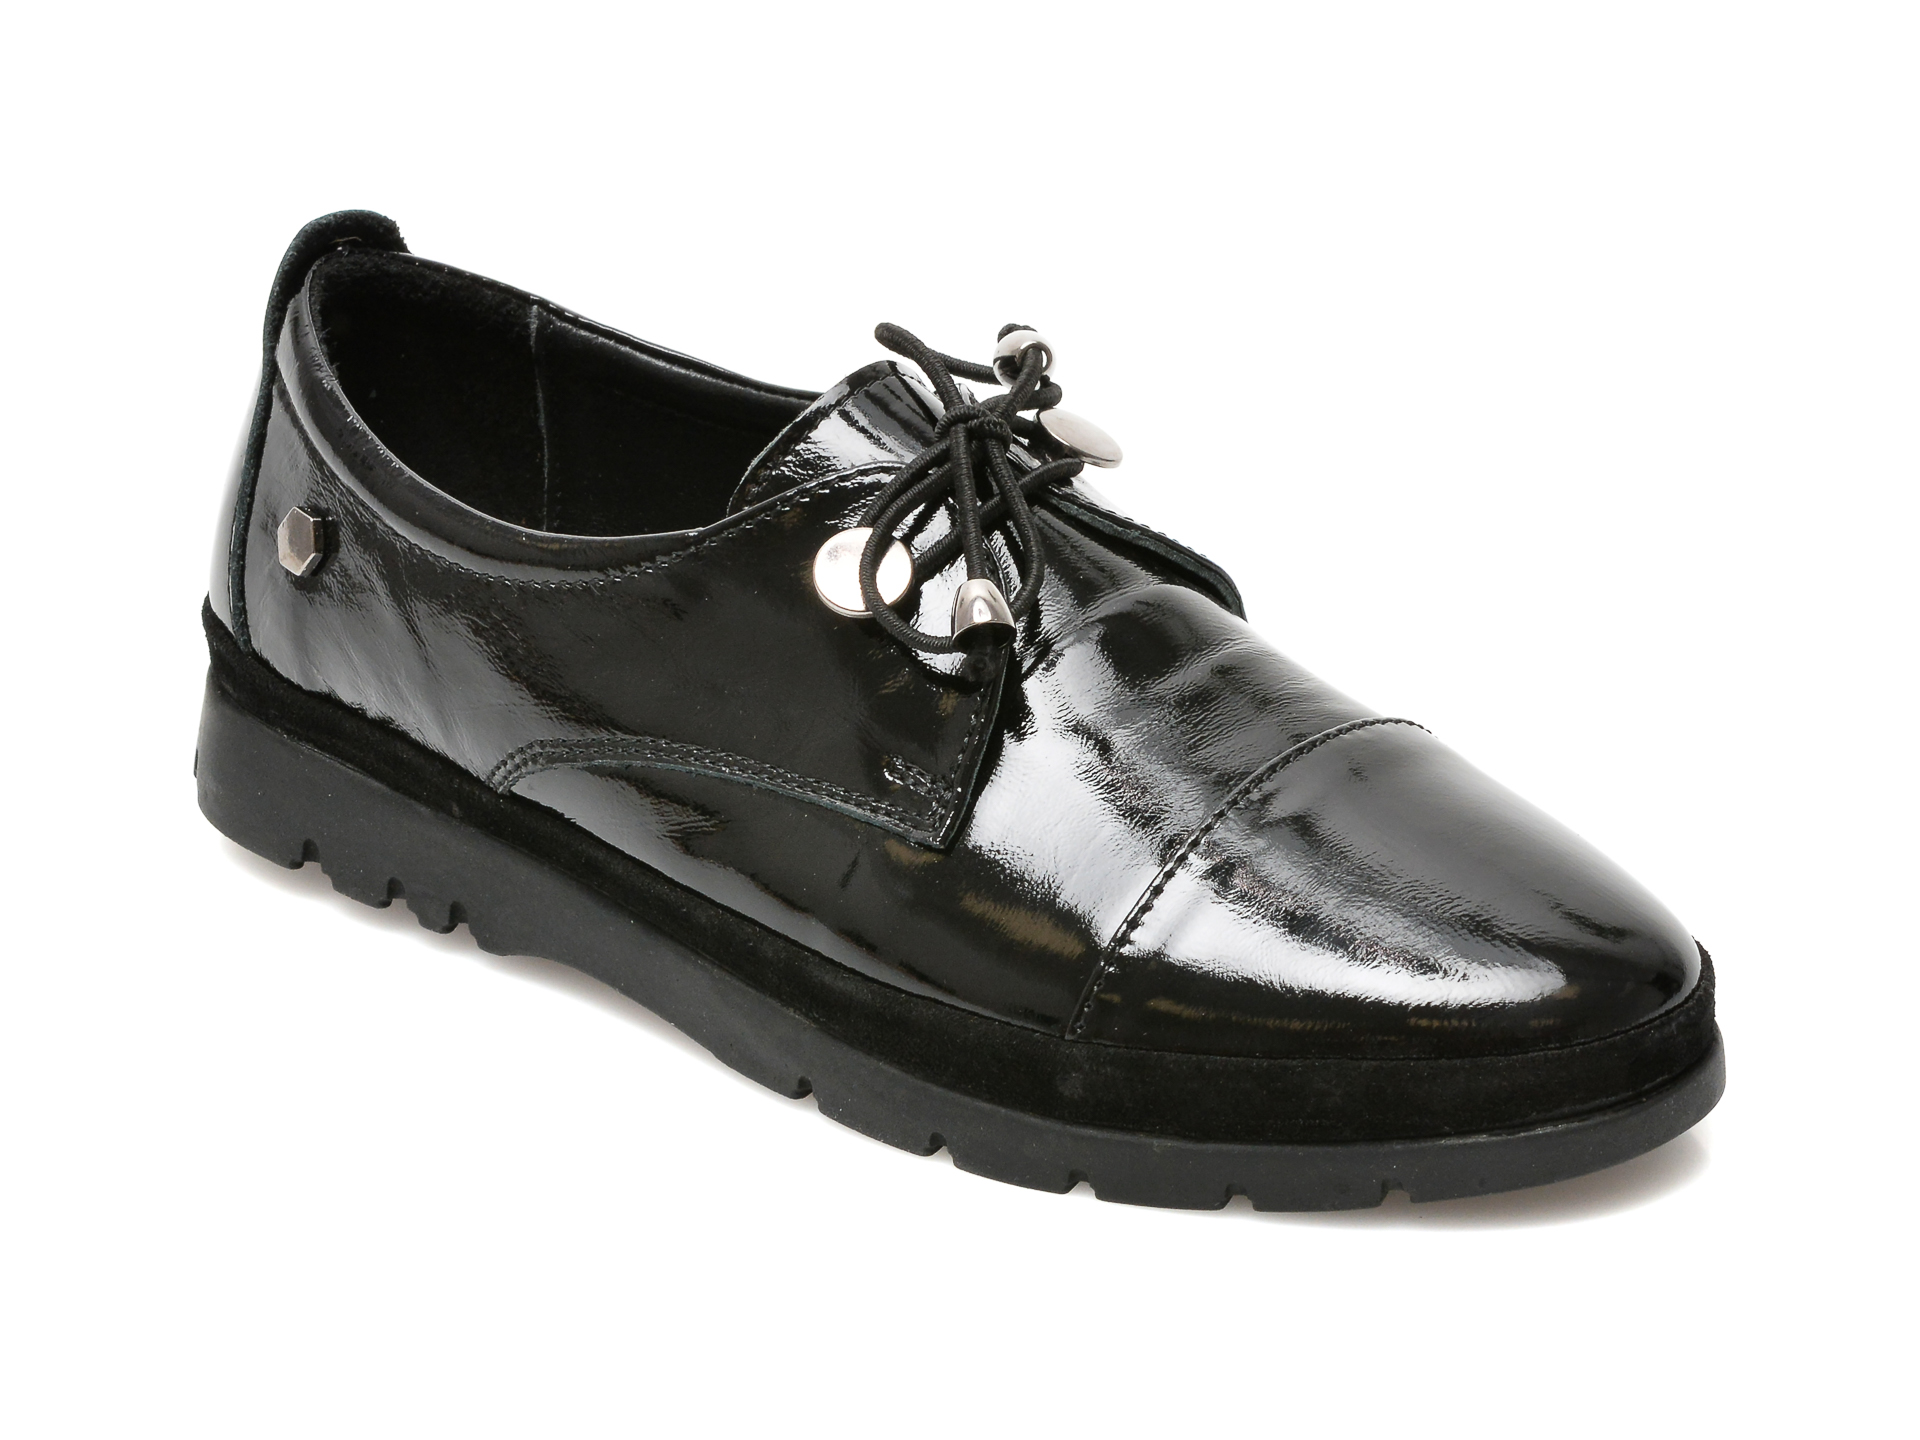 Pantofi FLAVIA PASSINI negri, 23999, din piele naturala lacuita Flavia Passini